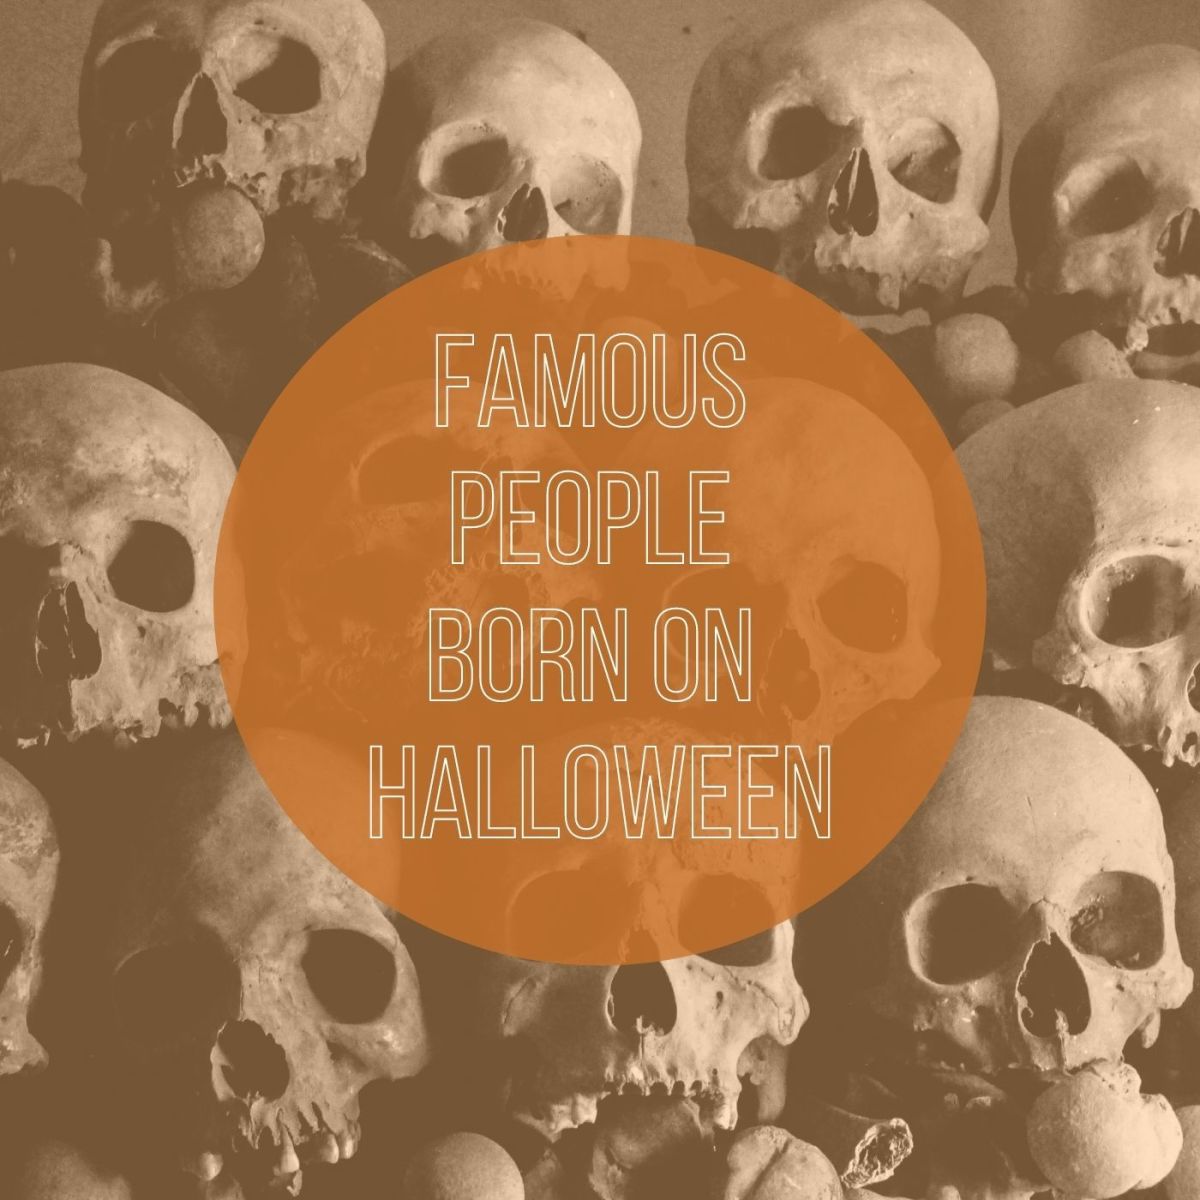 10 Famous People Born on Halloween